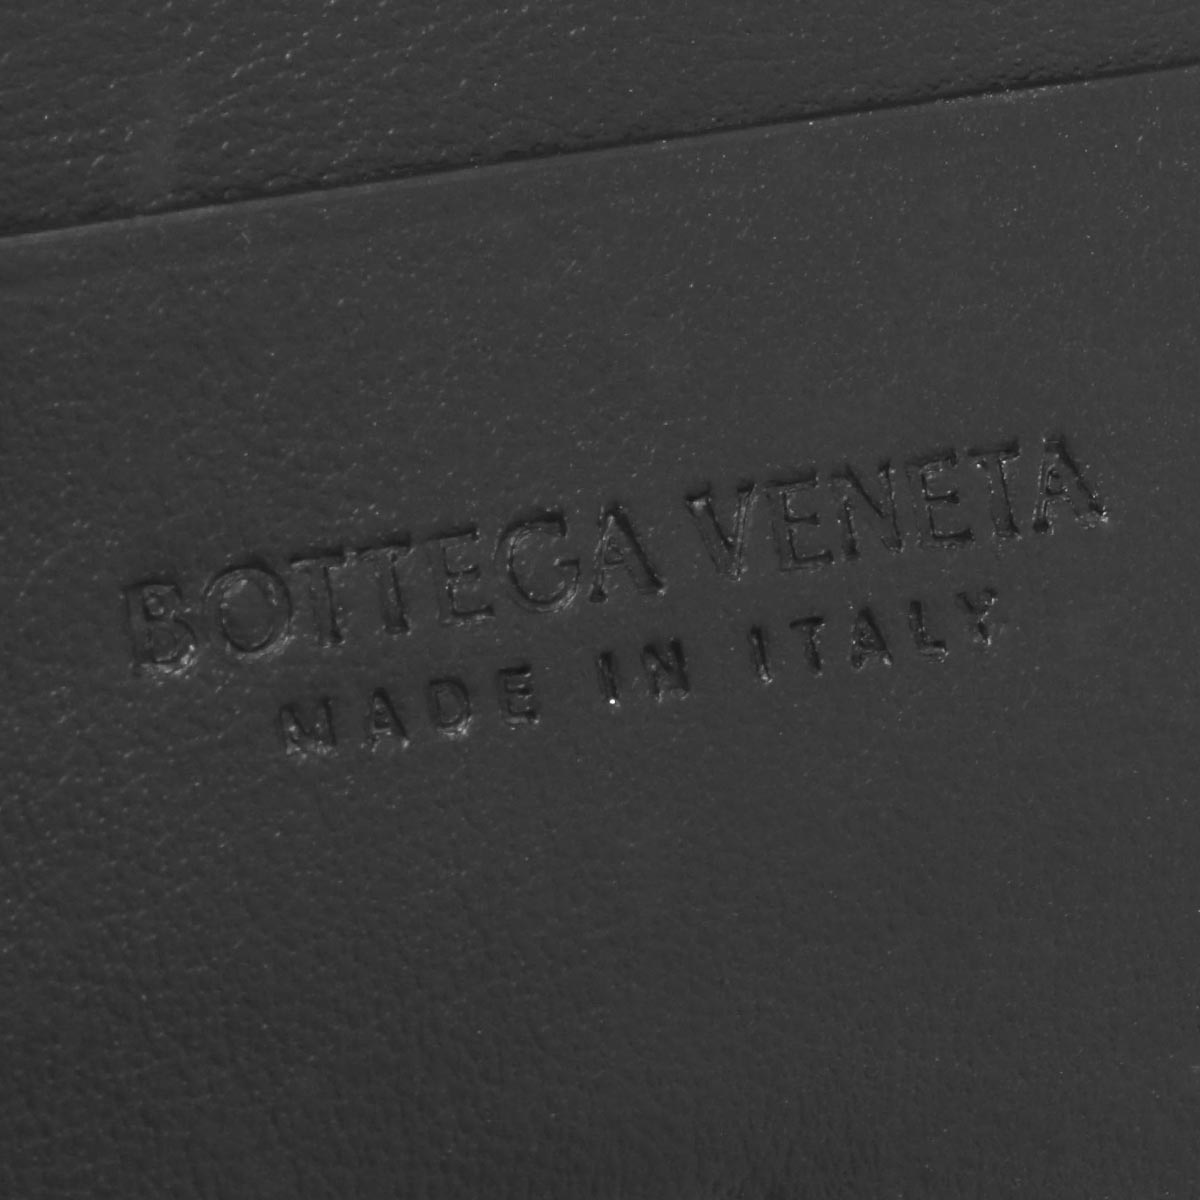 ボッテガヴェネタ (ボッテガ・ヴェネタ) カードケース/コインケース メンズ イントレチャート ブラック 667033 VCPQ4 8803  2021年秋冬新作 BOTTEGA VENETA